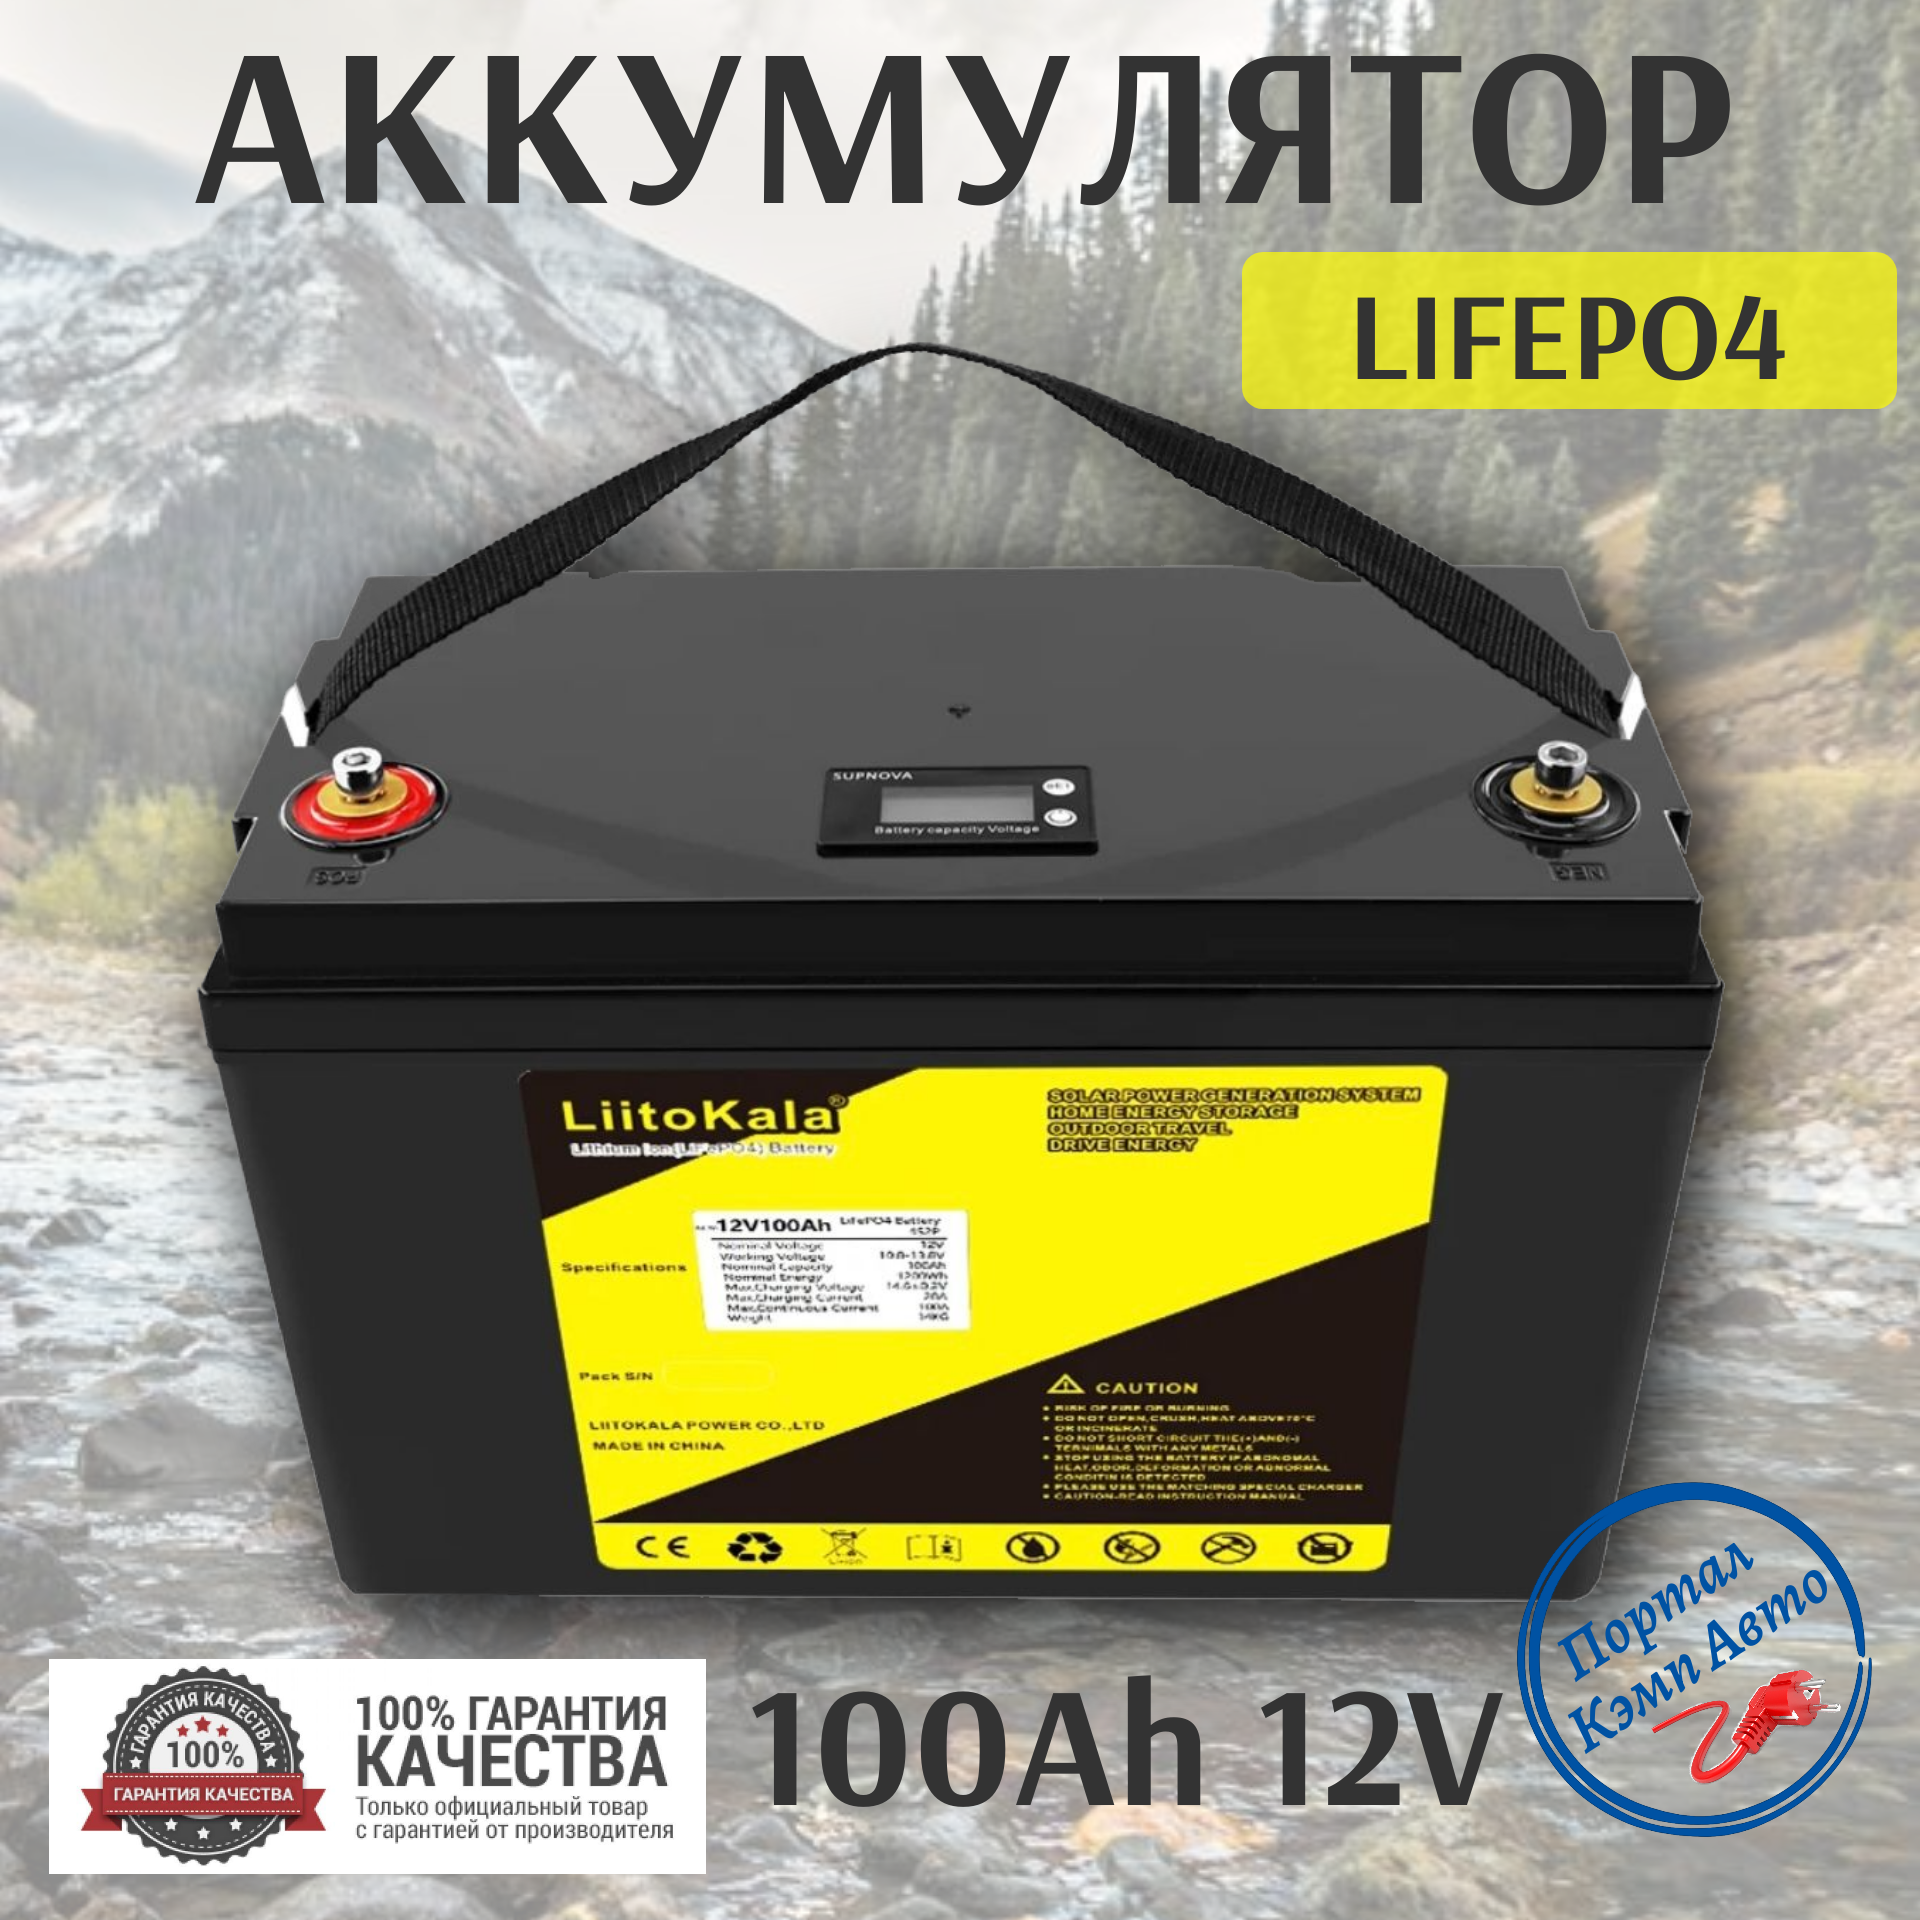 Аккумулятор литий-ионный 12v Lifepo4 100Ah Li-ion Liitokala